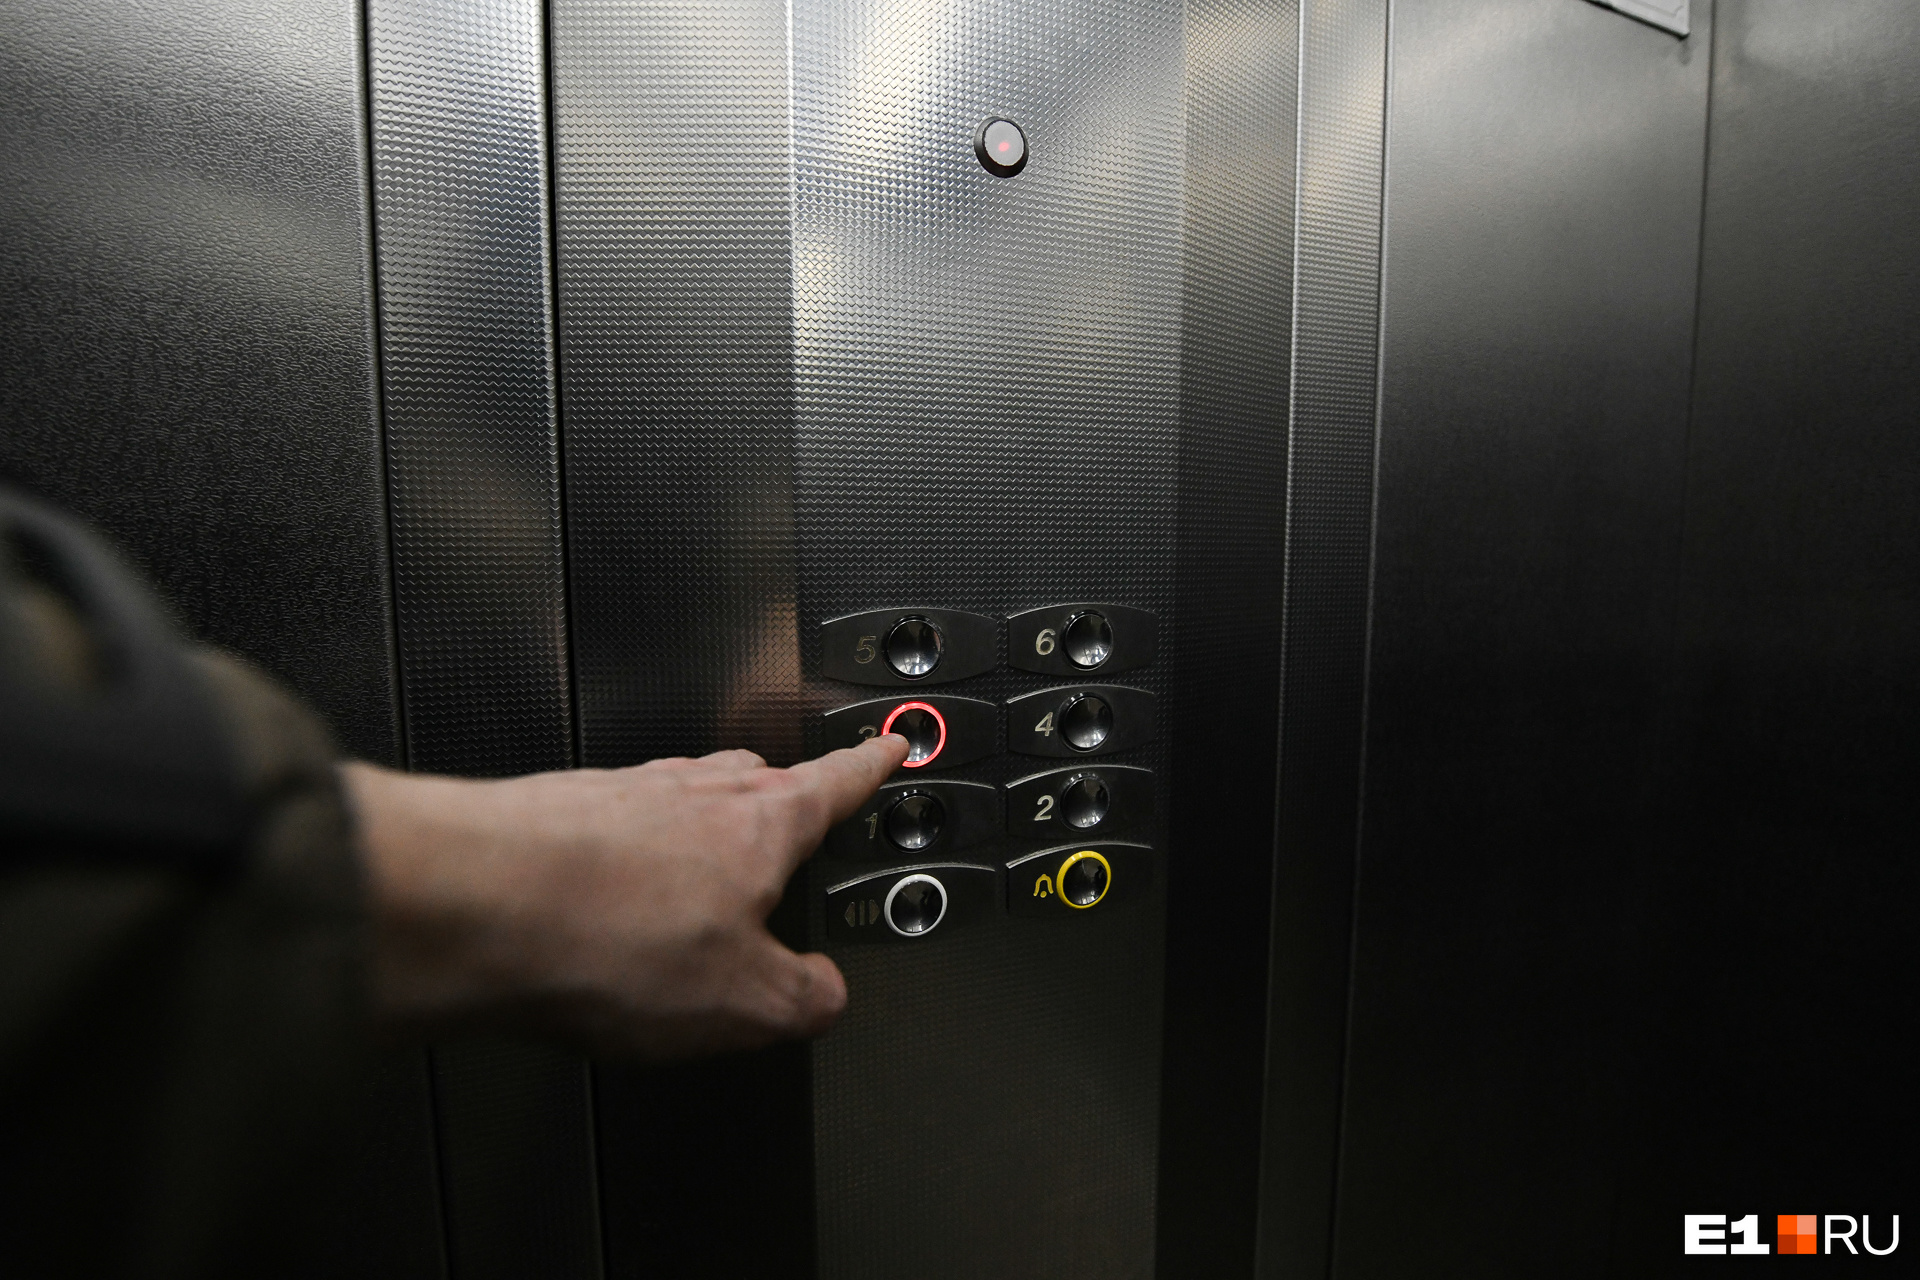 Перед тем как зайти в лифт, внимательно посмотрите, сколько человек он вмещает и есть ли внутри связь с диспетчером